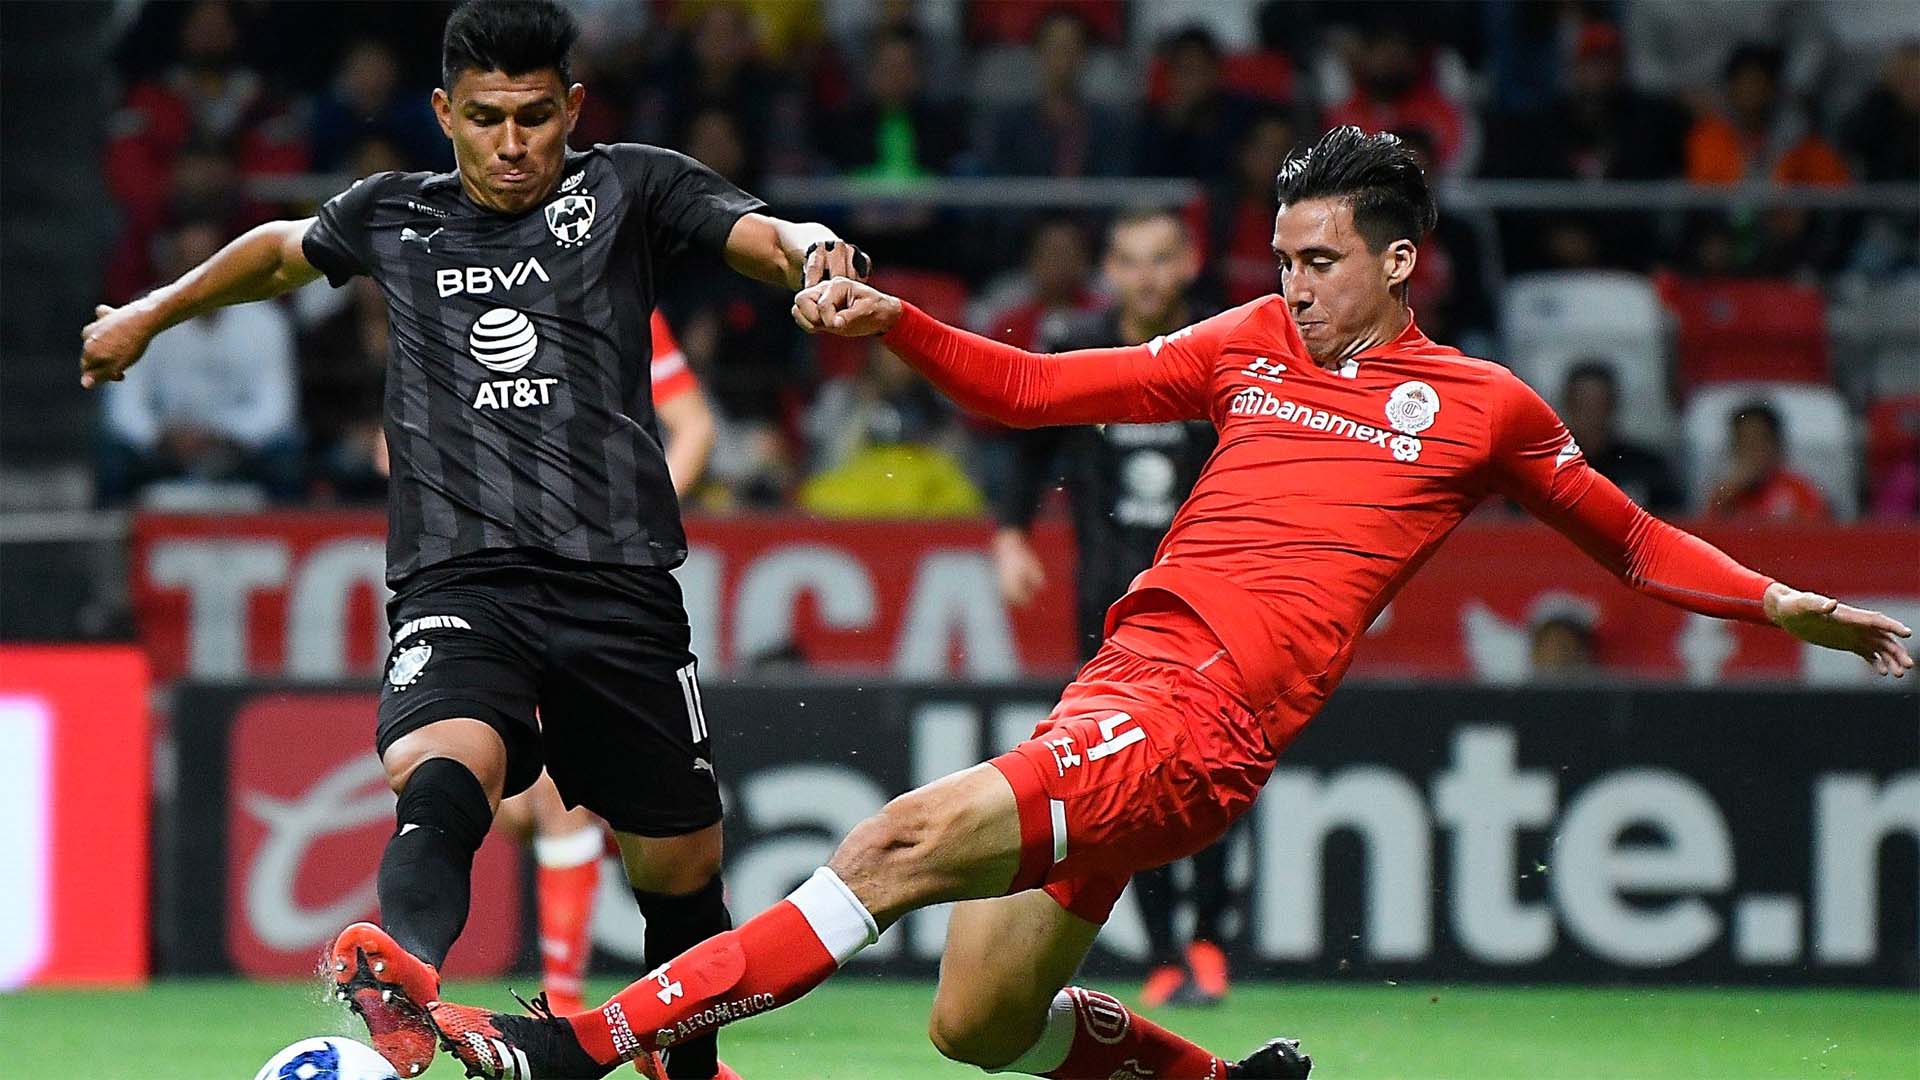 Mueven partido entre Monterrey y Toluca